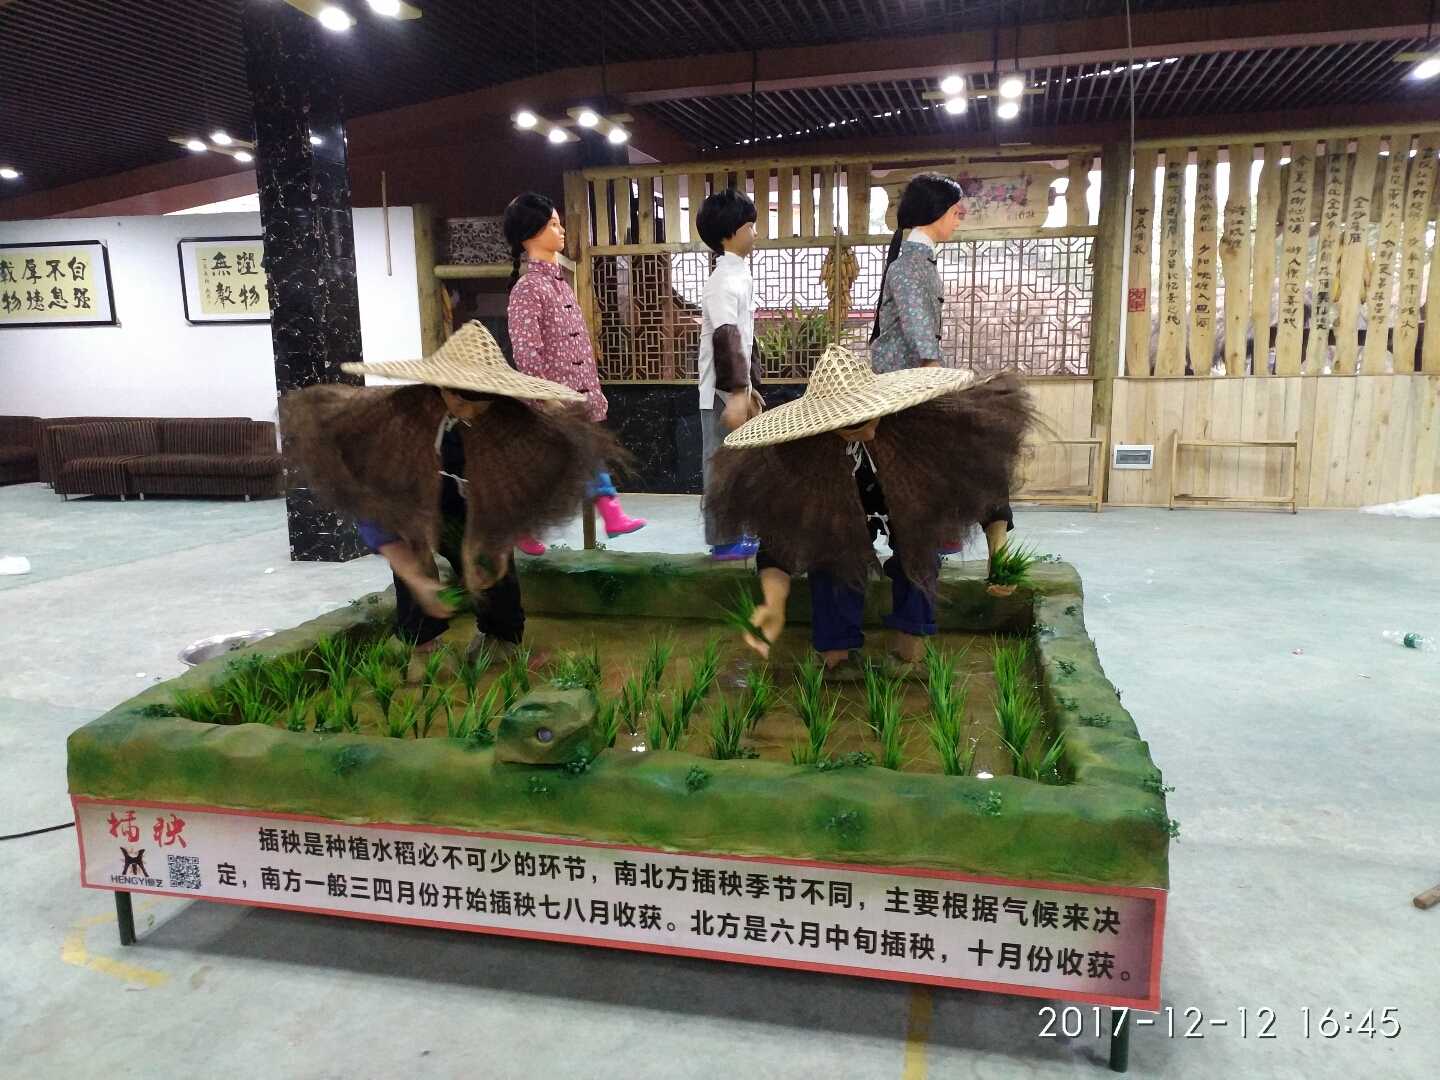 重庆市友军生态园农耕文化展品设计、制作、安装。